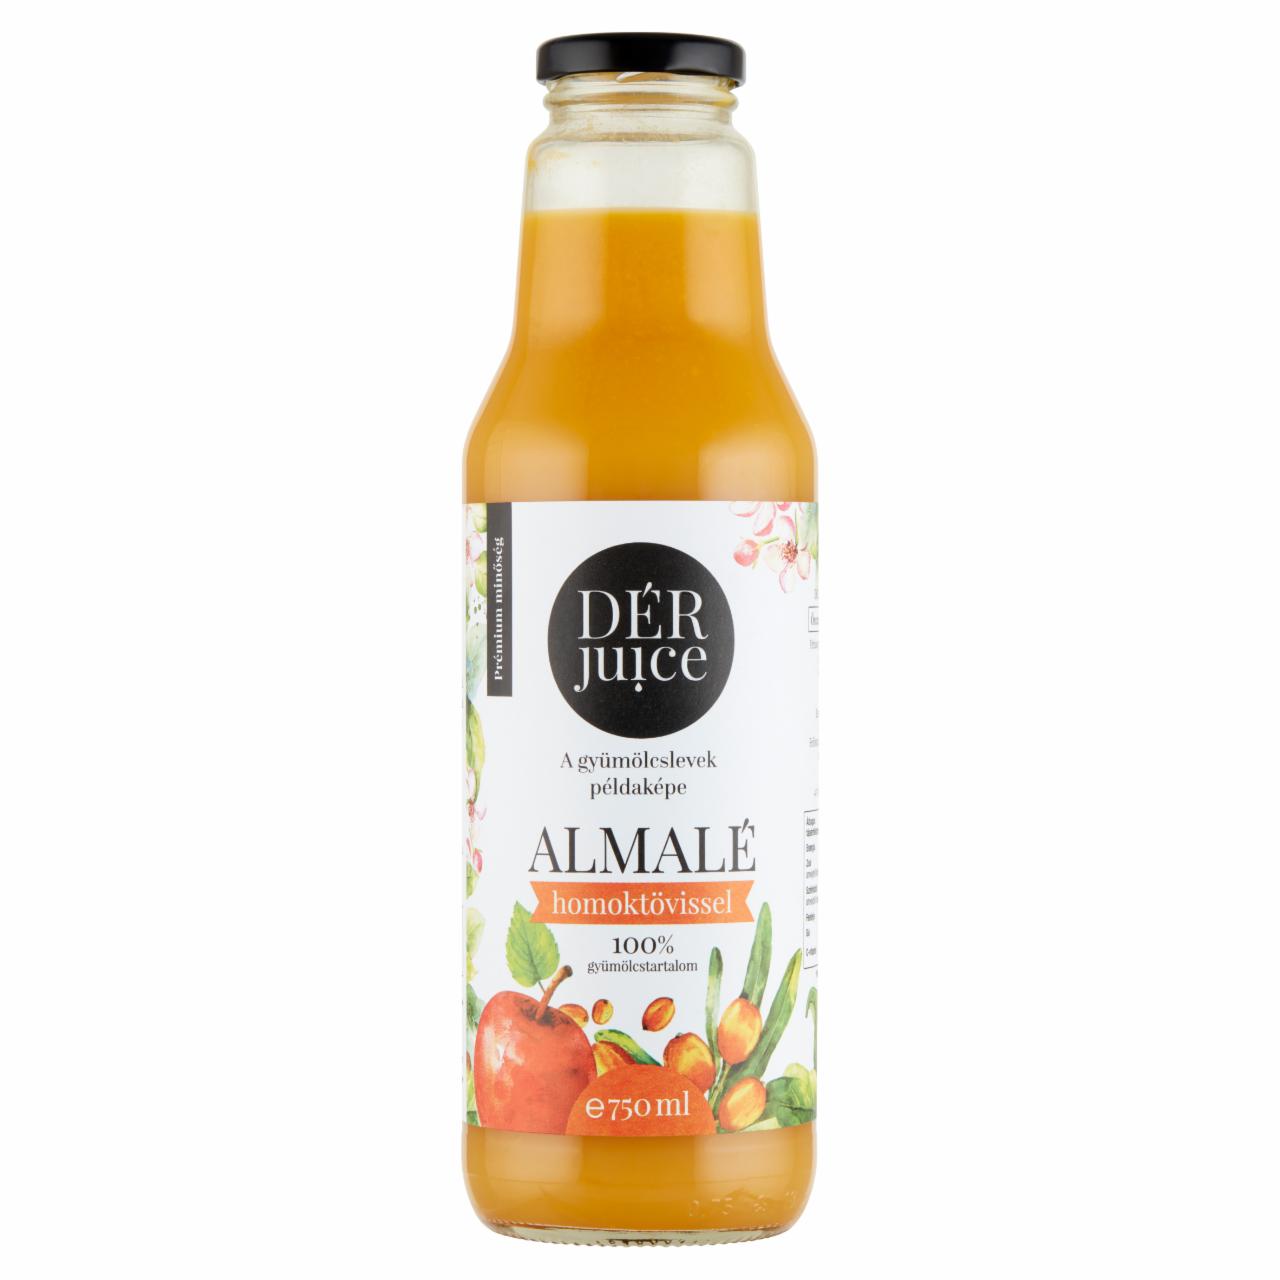 Képek - DÉR Juice 100% almalé homoktövissel 750 ml